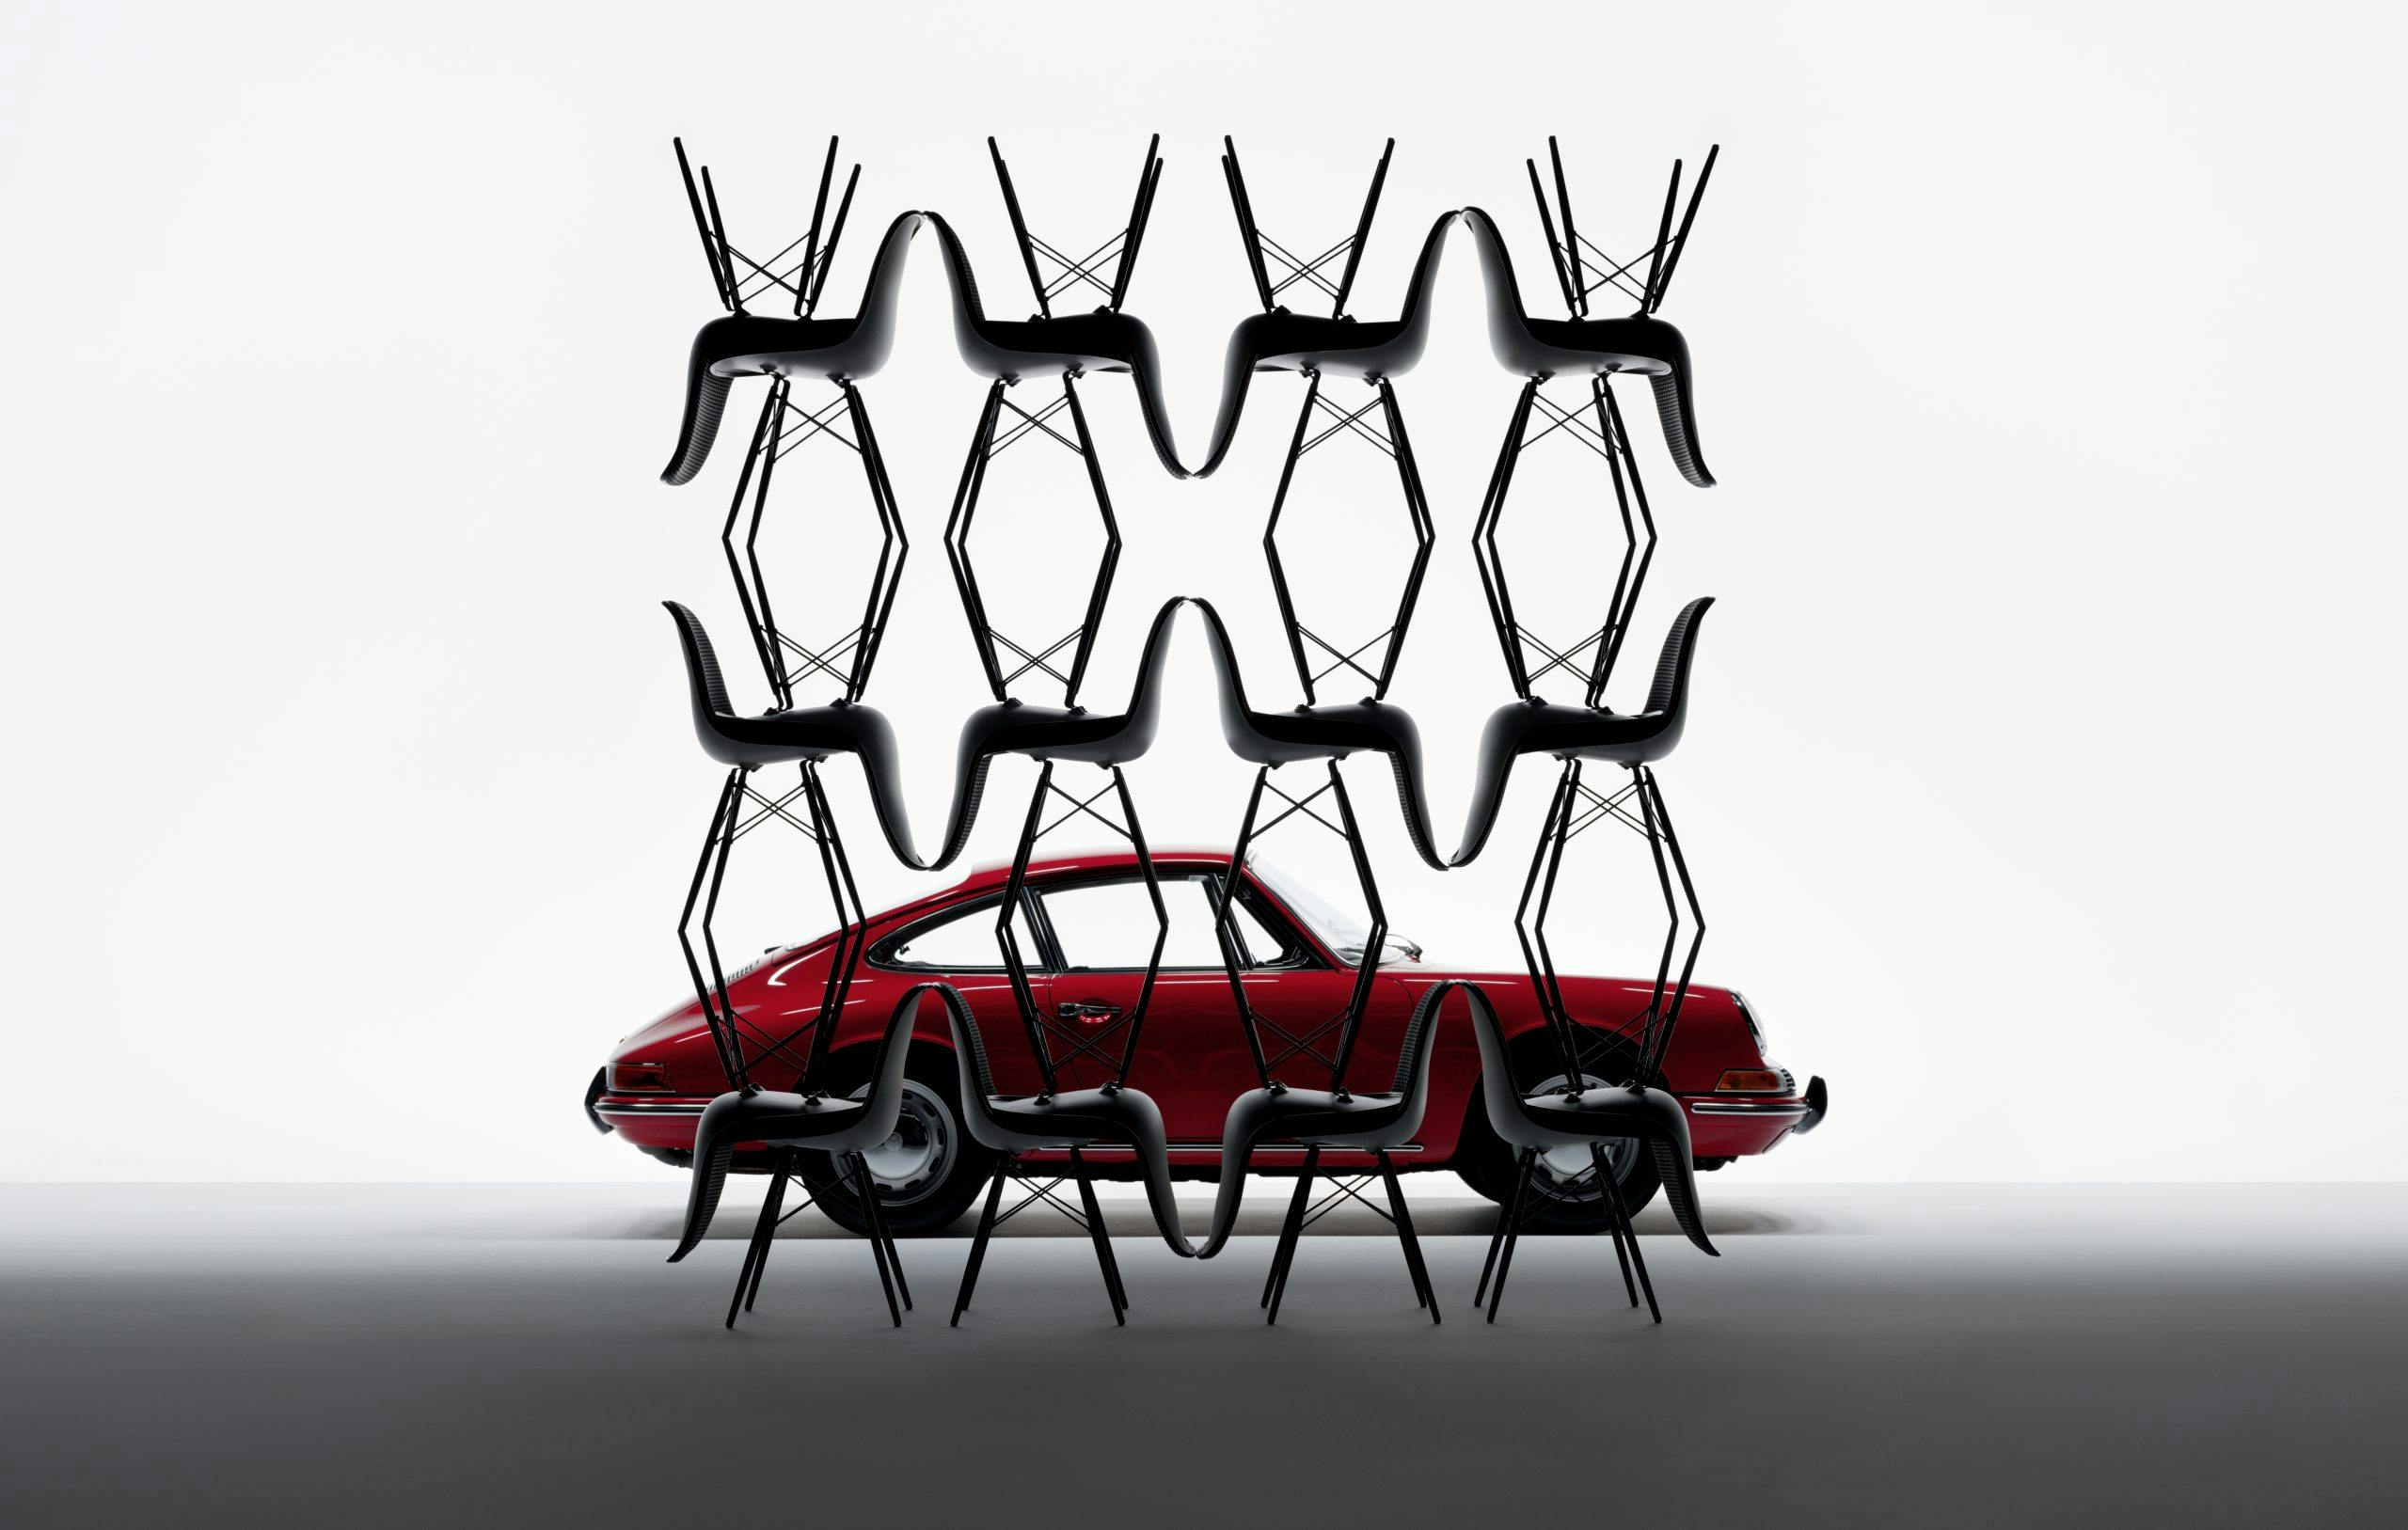 Porsche Pepita Edition by Vitra: Limitierte Kollektion ikonischer Stühle mit Bezug zu Sportwagen-Klassikern